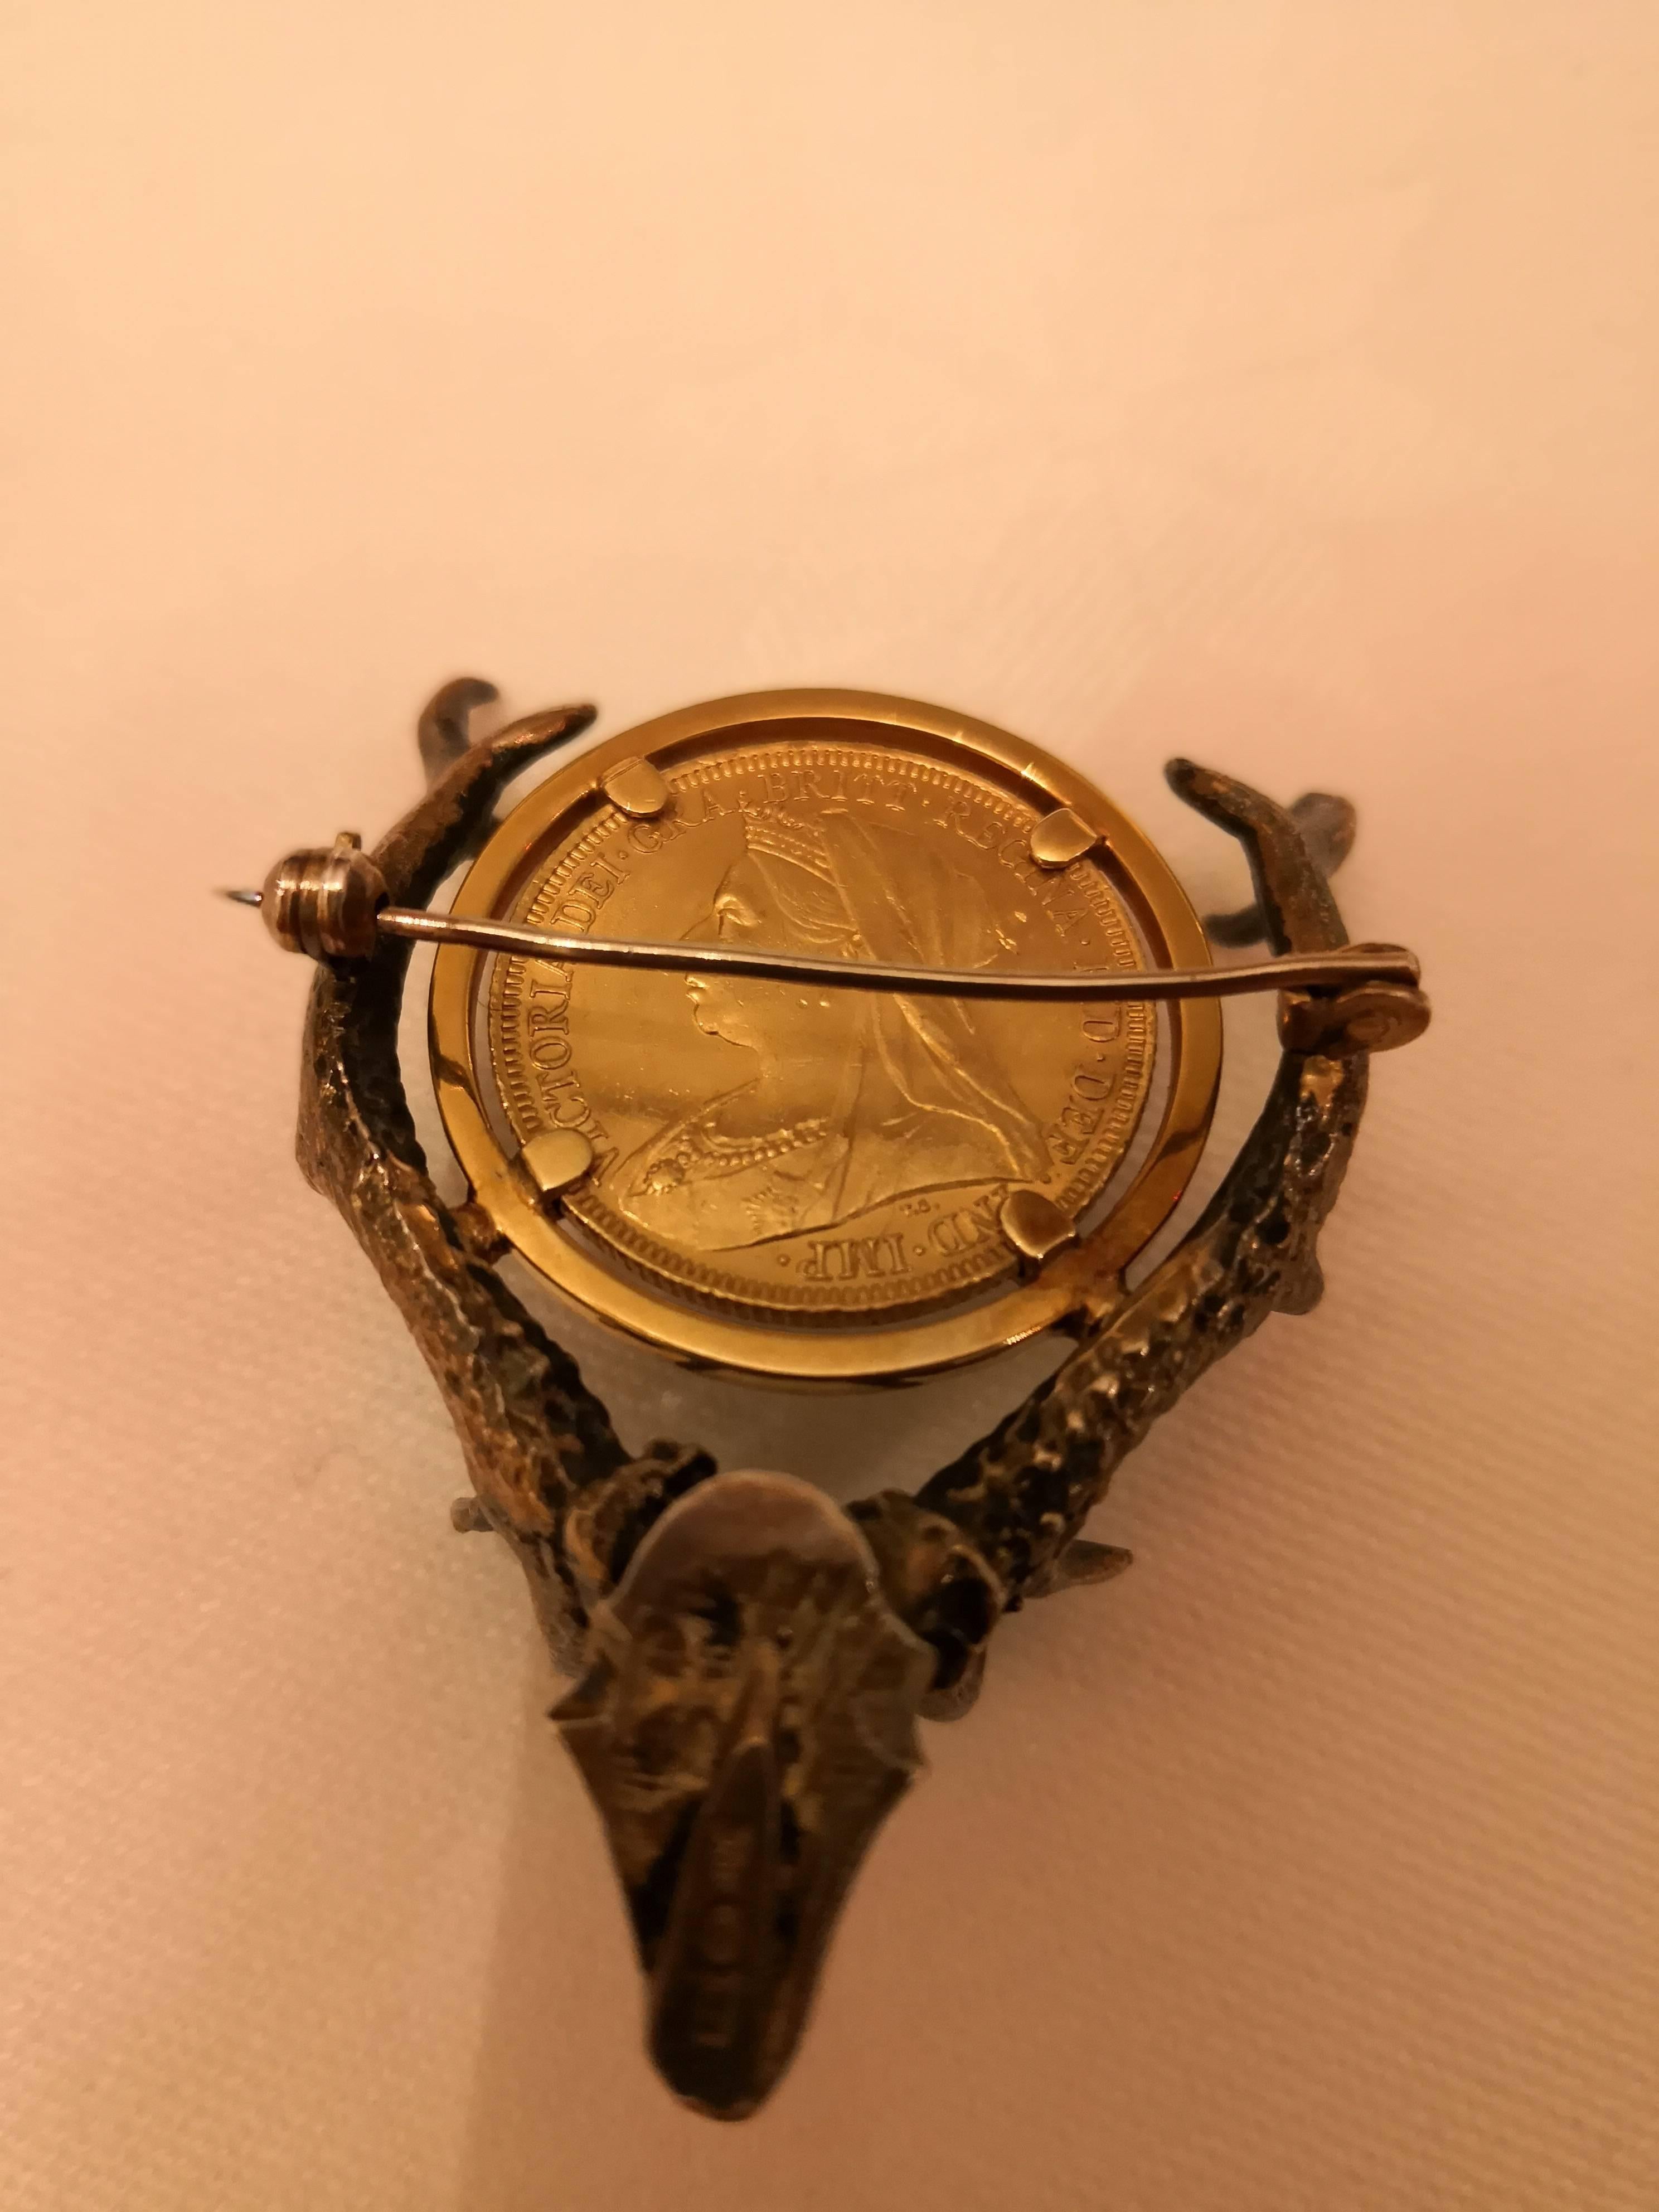 Broche faite à la main en forme de bois de cerf en argent doré. Au milieu, une médaille d'or victorienne datée de 1895. Poinçon autrichien et poinçon d'argent.